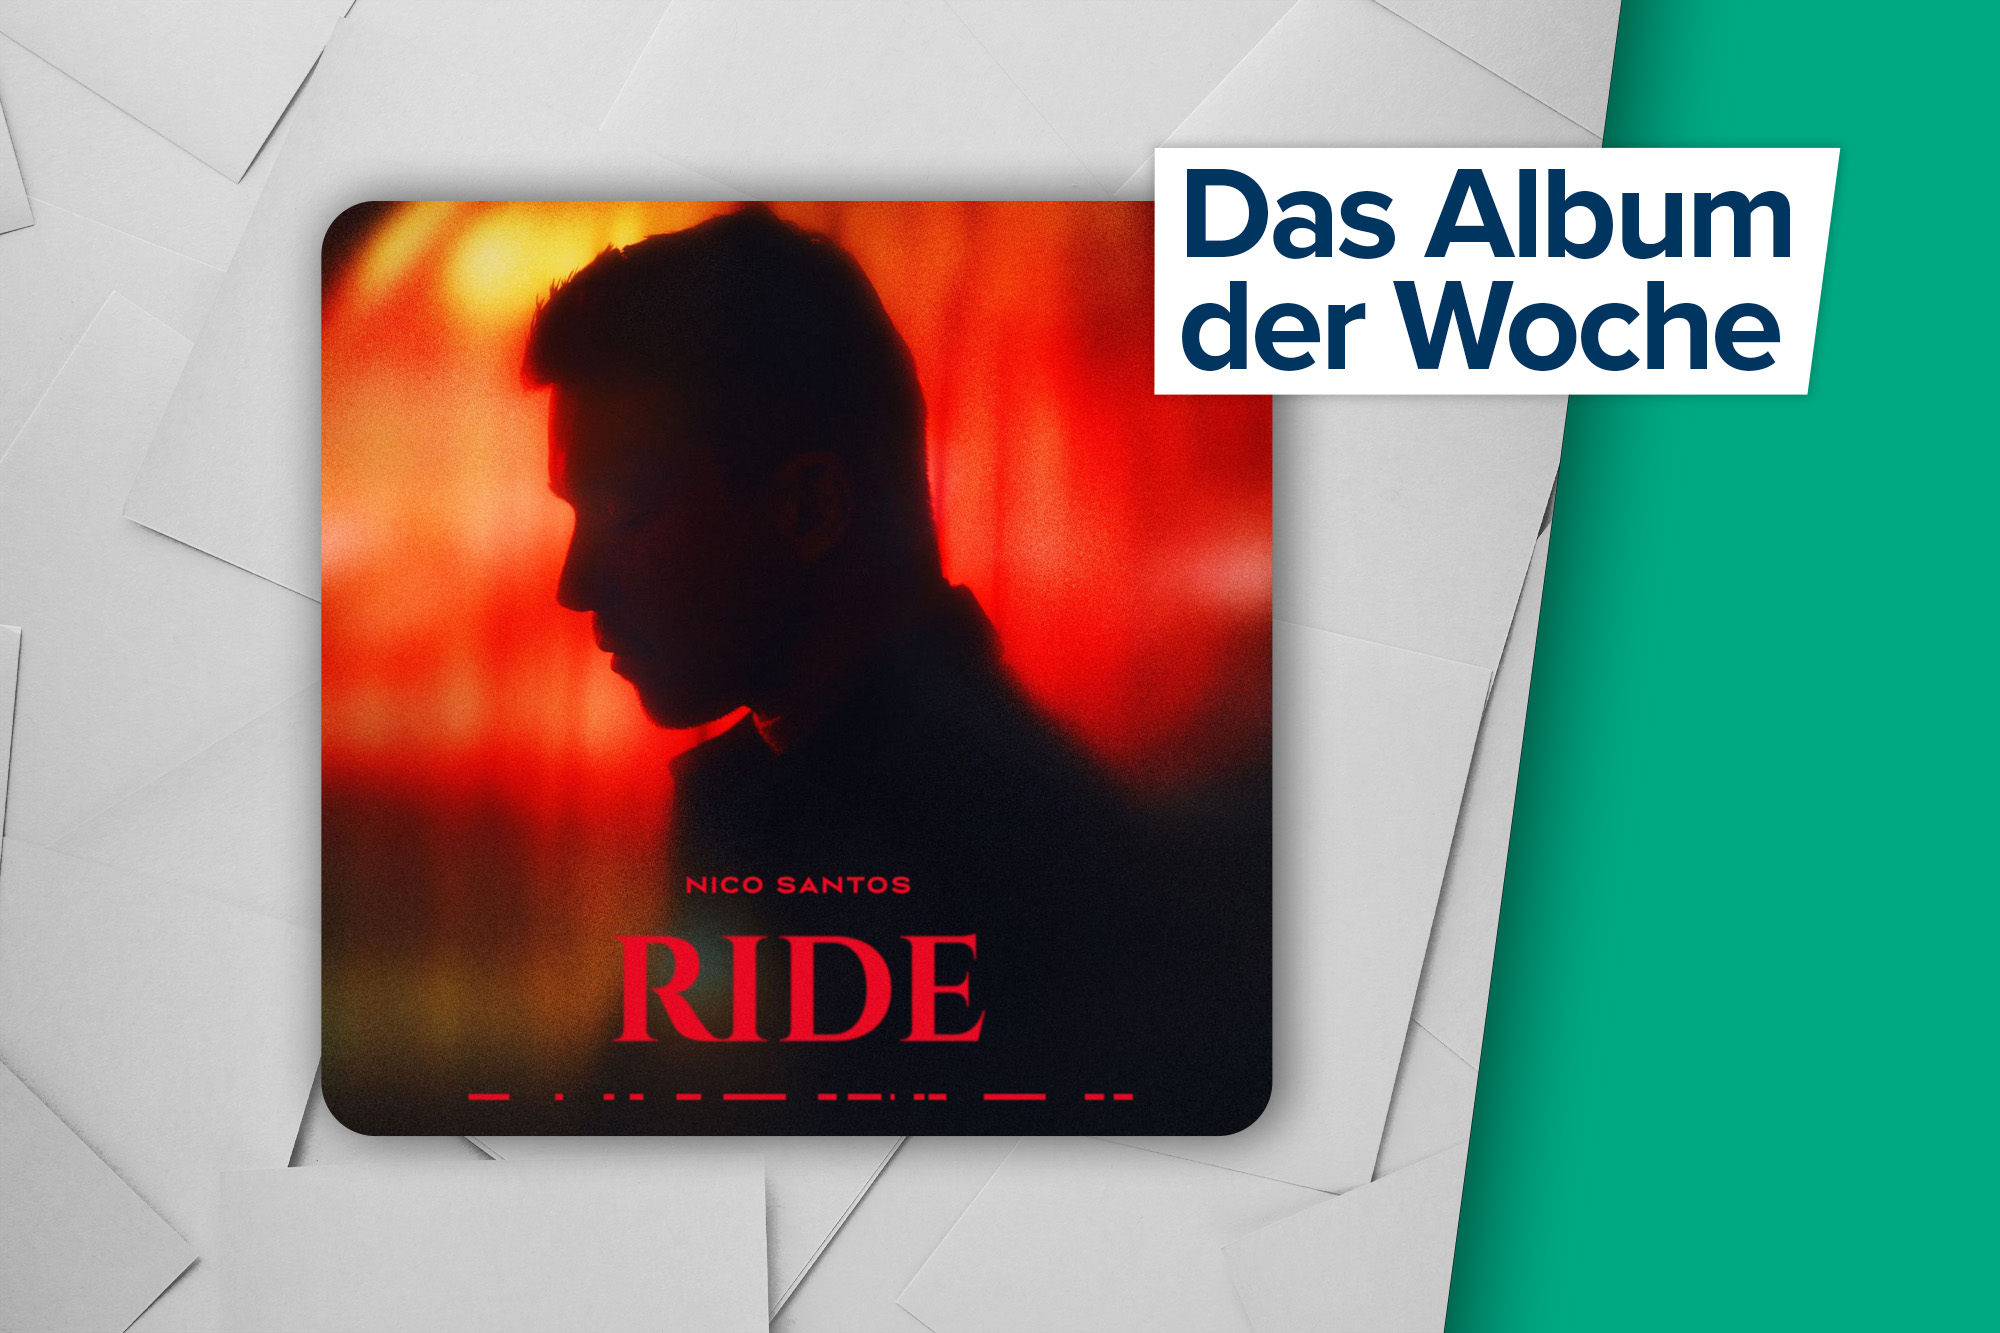 Das Album der Woche: "Ride" von Nico Santos (Universal Music)